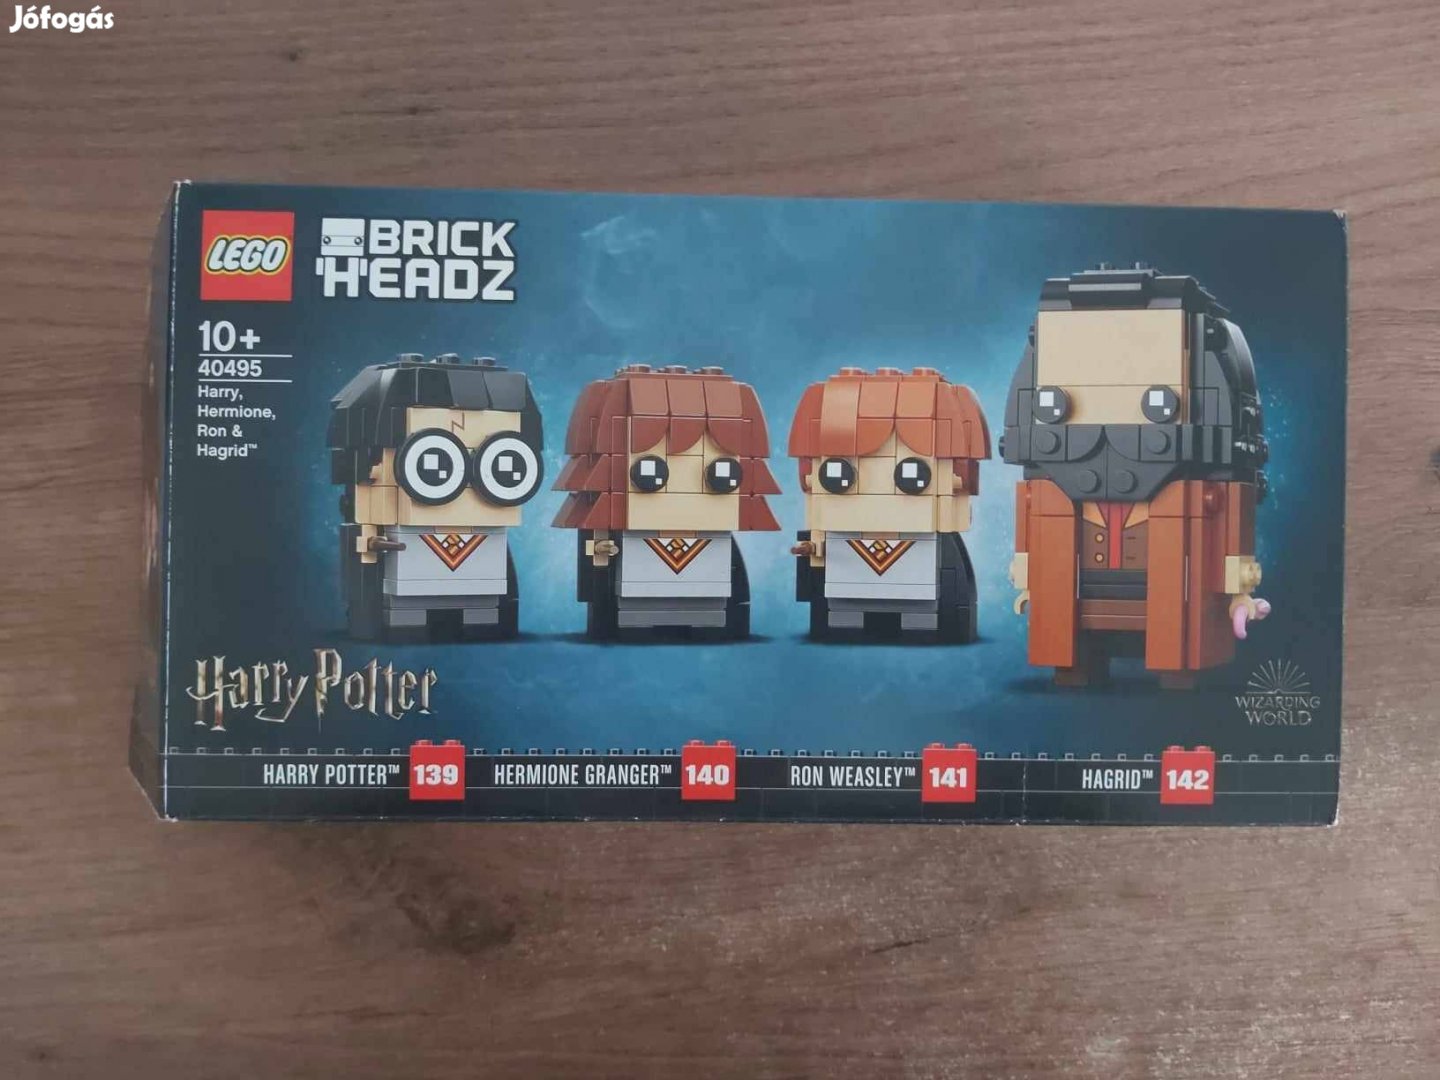 Lego harry potter brickheadz